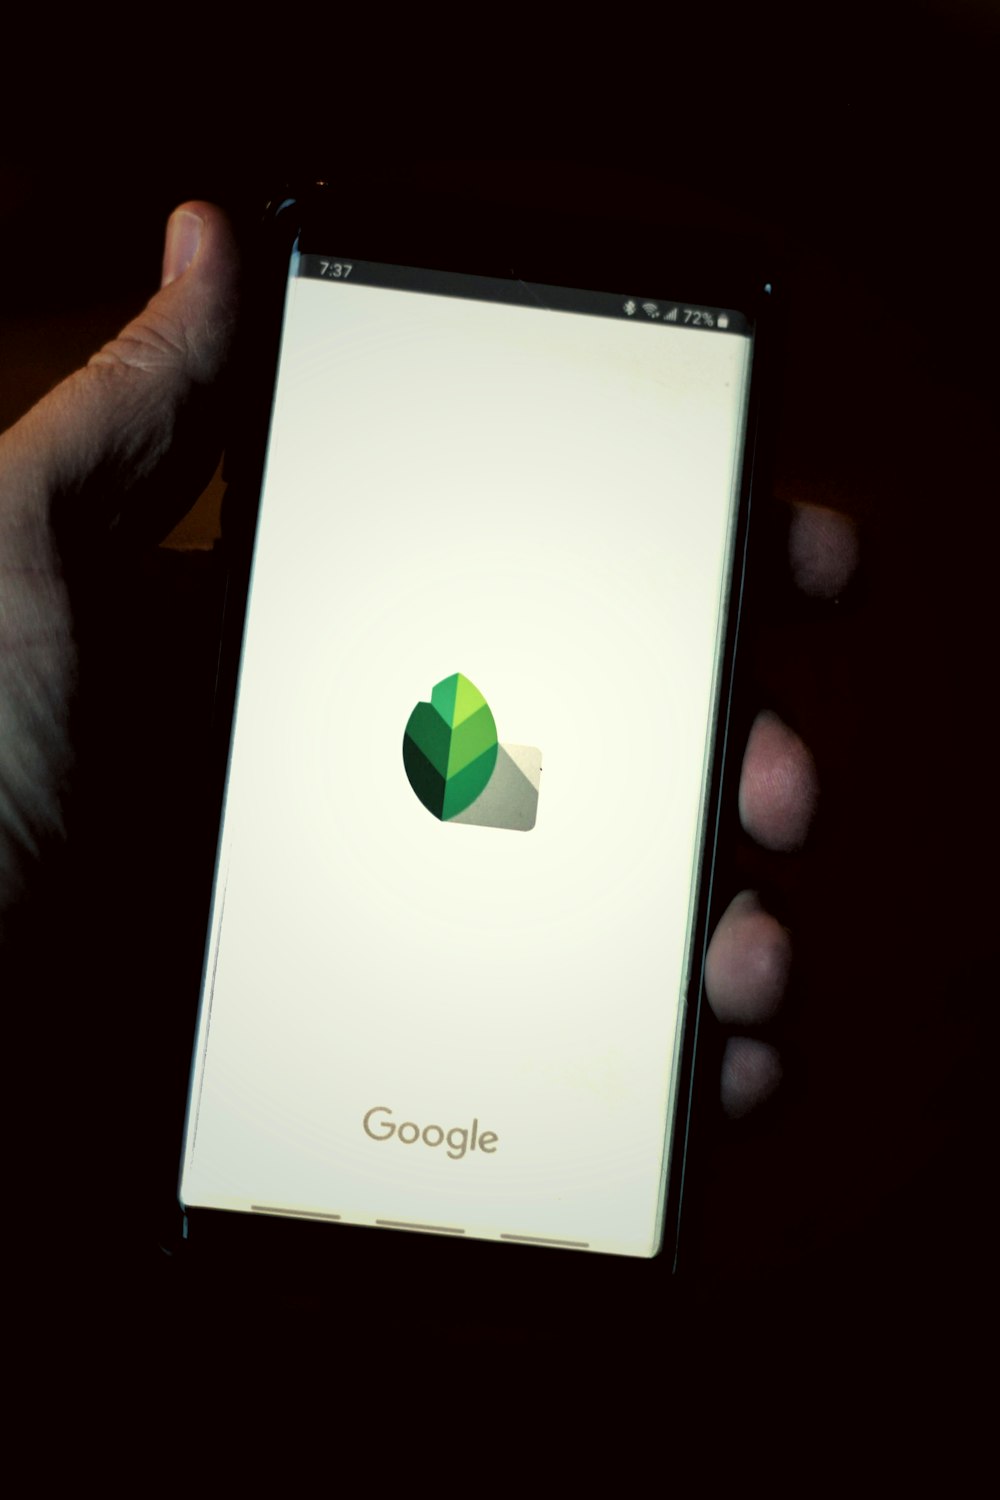 Smartphone Sony Xperia blanco que muestra la búsqueda de Google